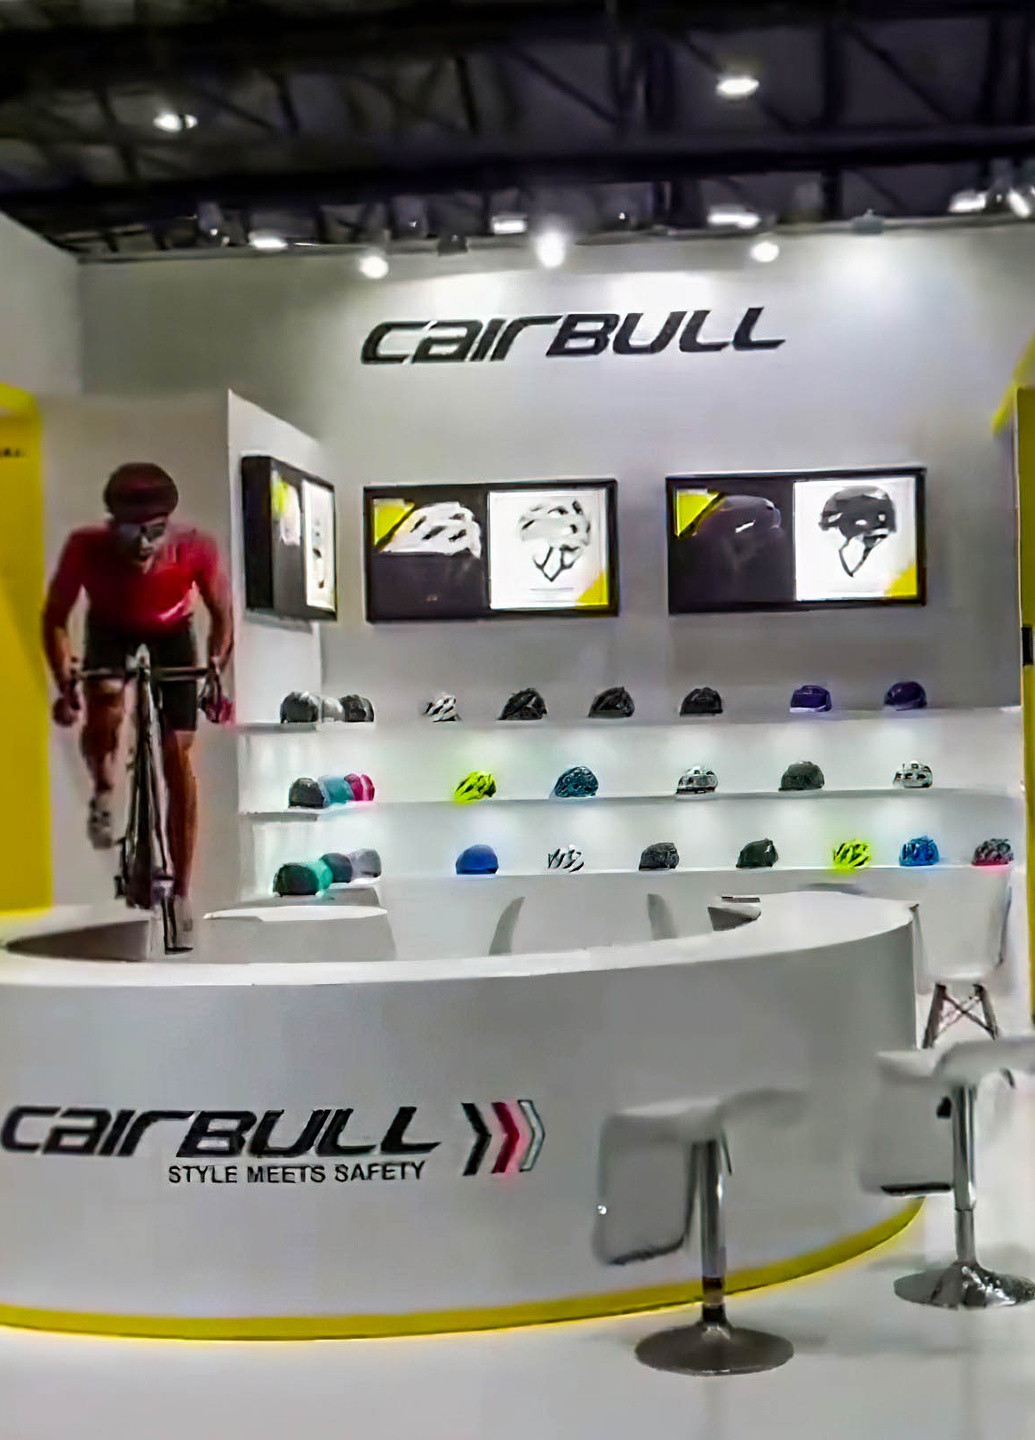 Велосипедный шлем с визором, габаритным LED фонарем, защитный велошлем мужской и женский Cairbull (252818605)